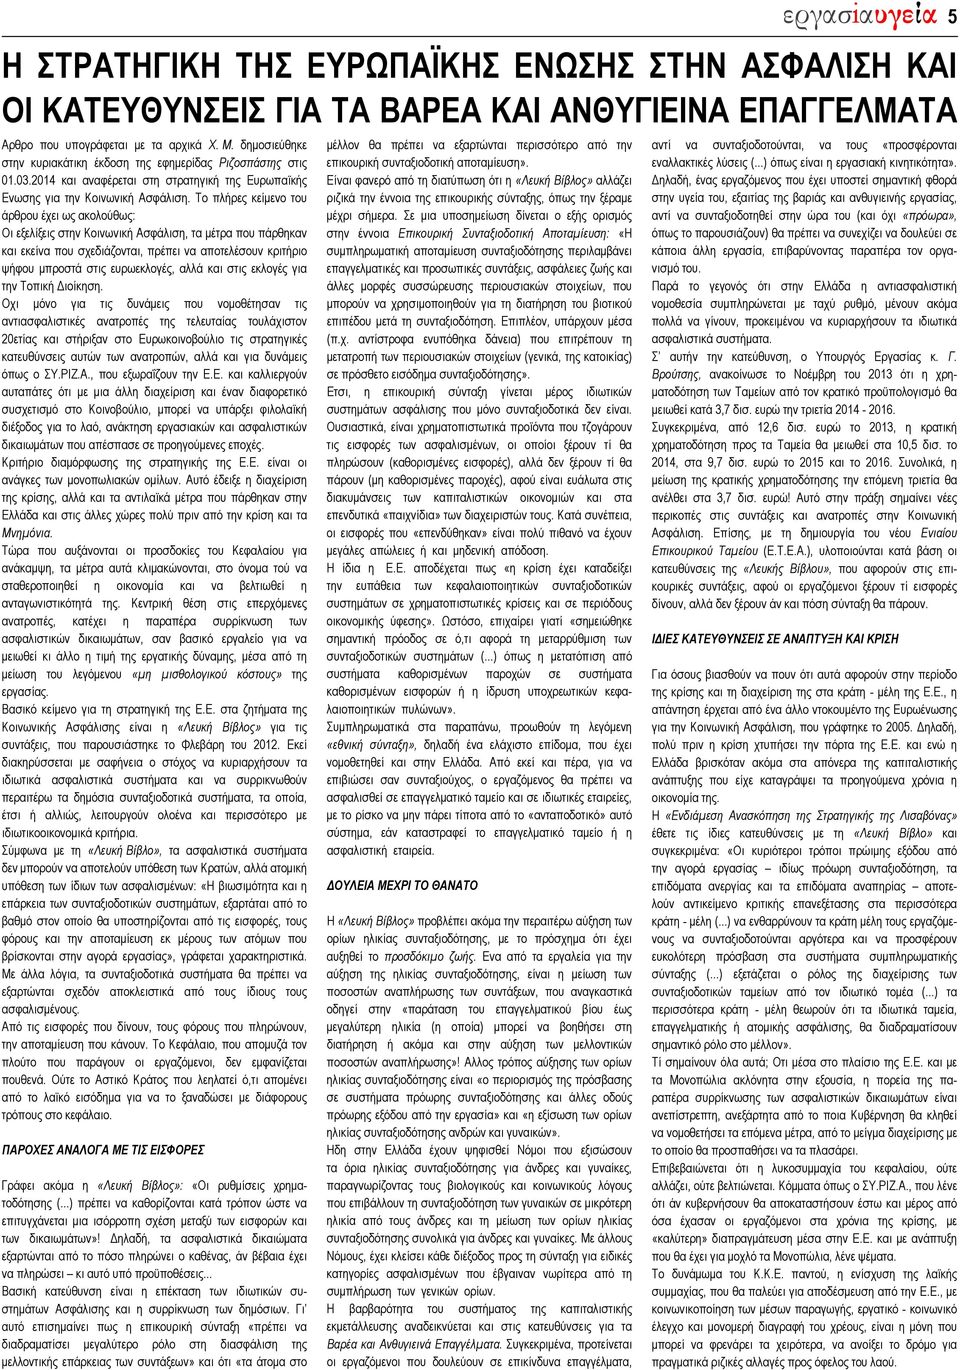 Αρθρο που υπογράφεται με τα αρχικά Χ. Μ. δημοσιεύθηκε στην κυριακάτικη έκδοση της εφημερίδας Ριζοσπάστης στις 01.03.2014 και αναφέρεται στη στρατηγική της Ευρωπαϊκής Ενωσης για την Κοινωνική Ασφάλιση.